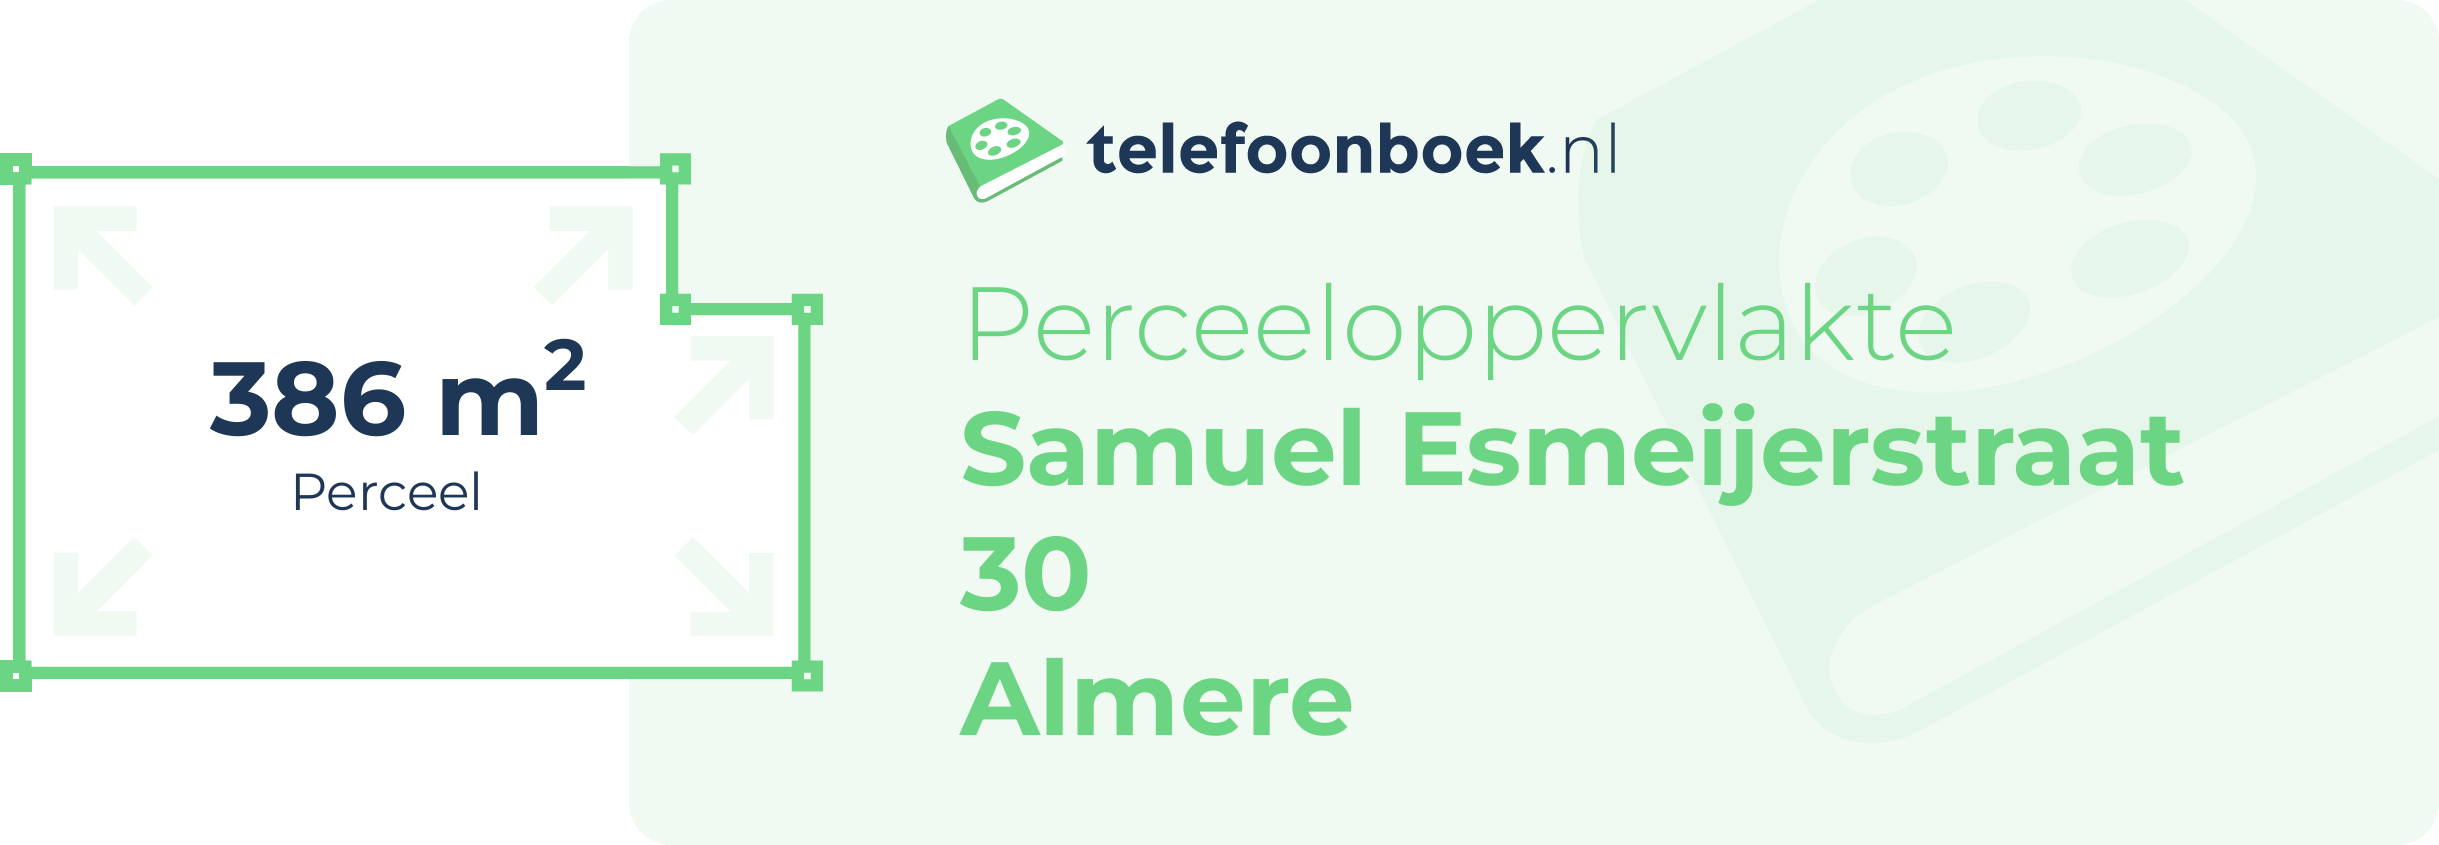 Perceeloppervlakte Samuel Esmeijerstraat 30 Almere